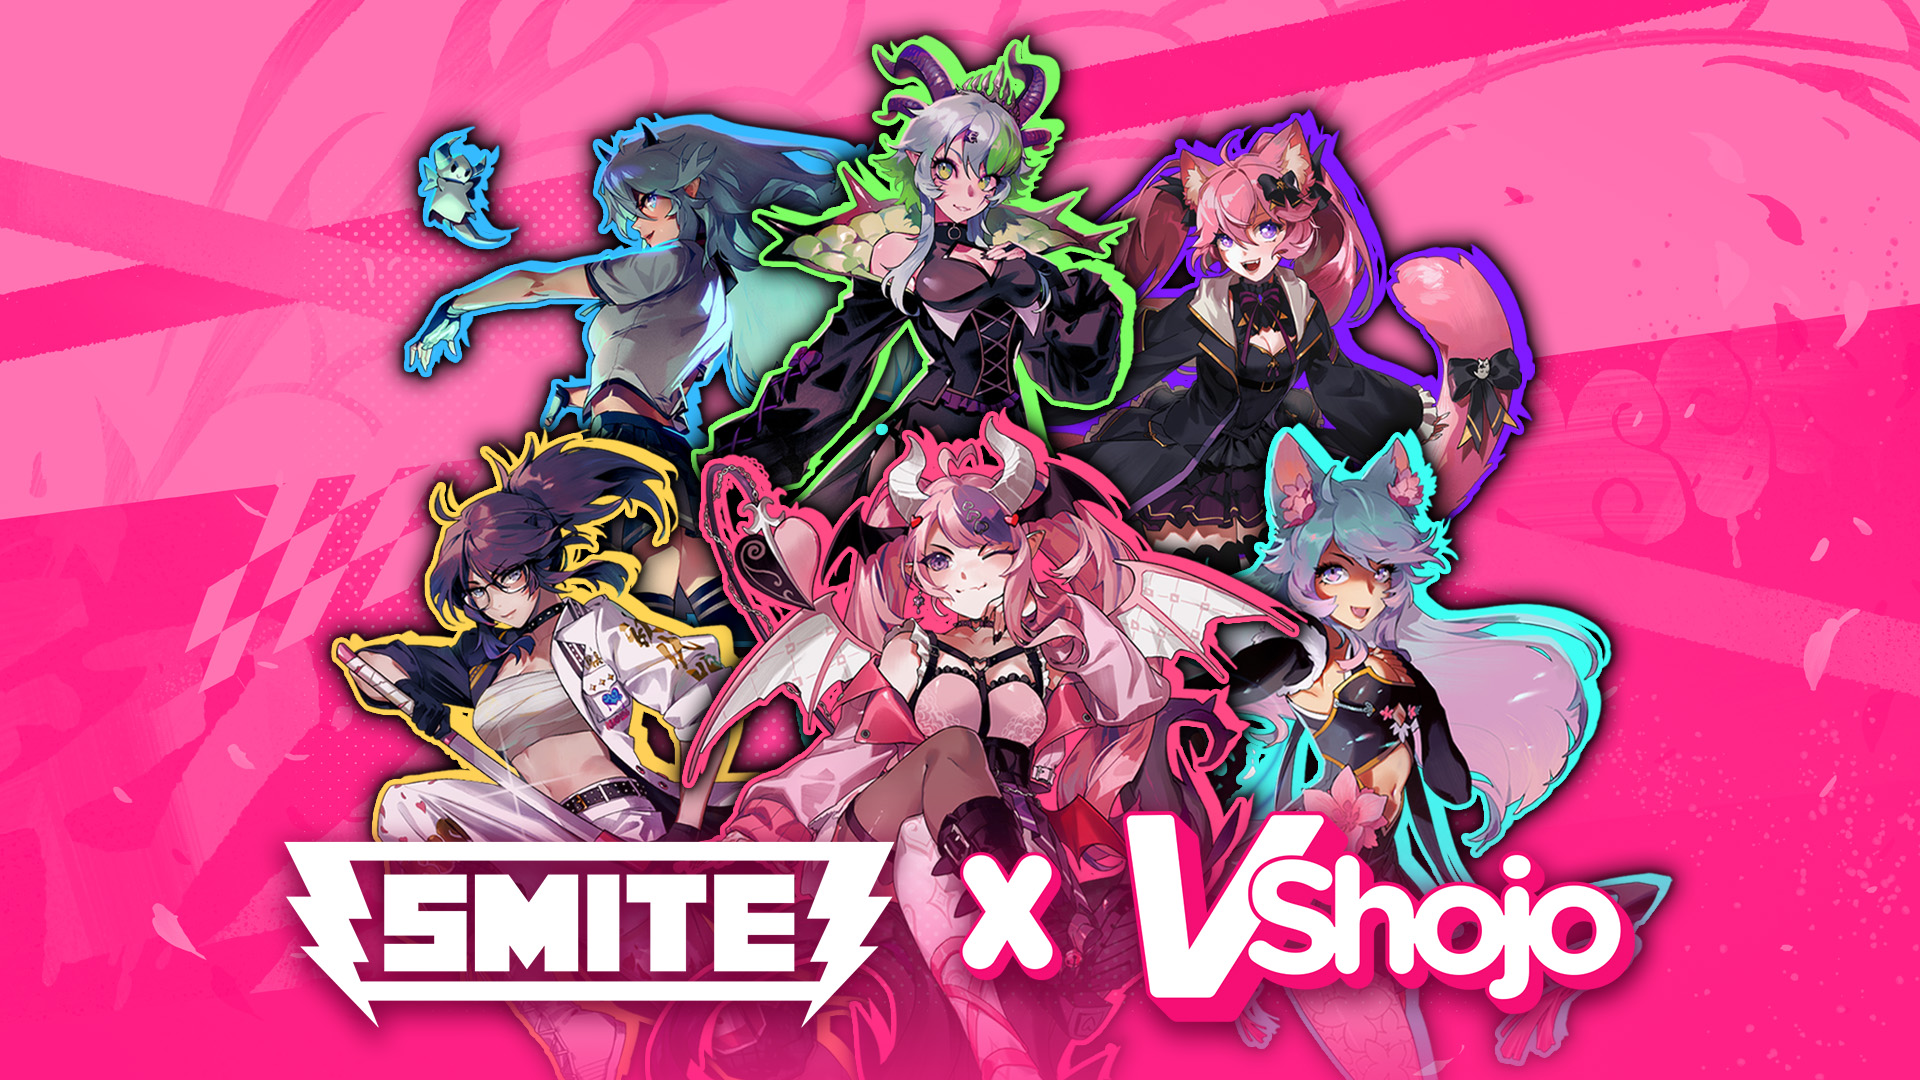 Anime VTubers VShojo walczą z bogami w najnowszym crossoverze Smite